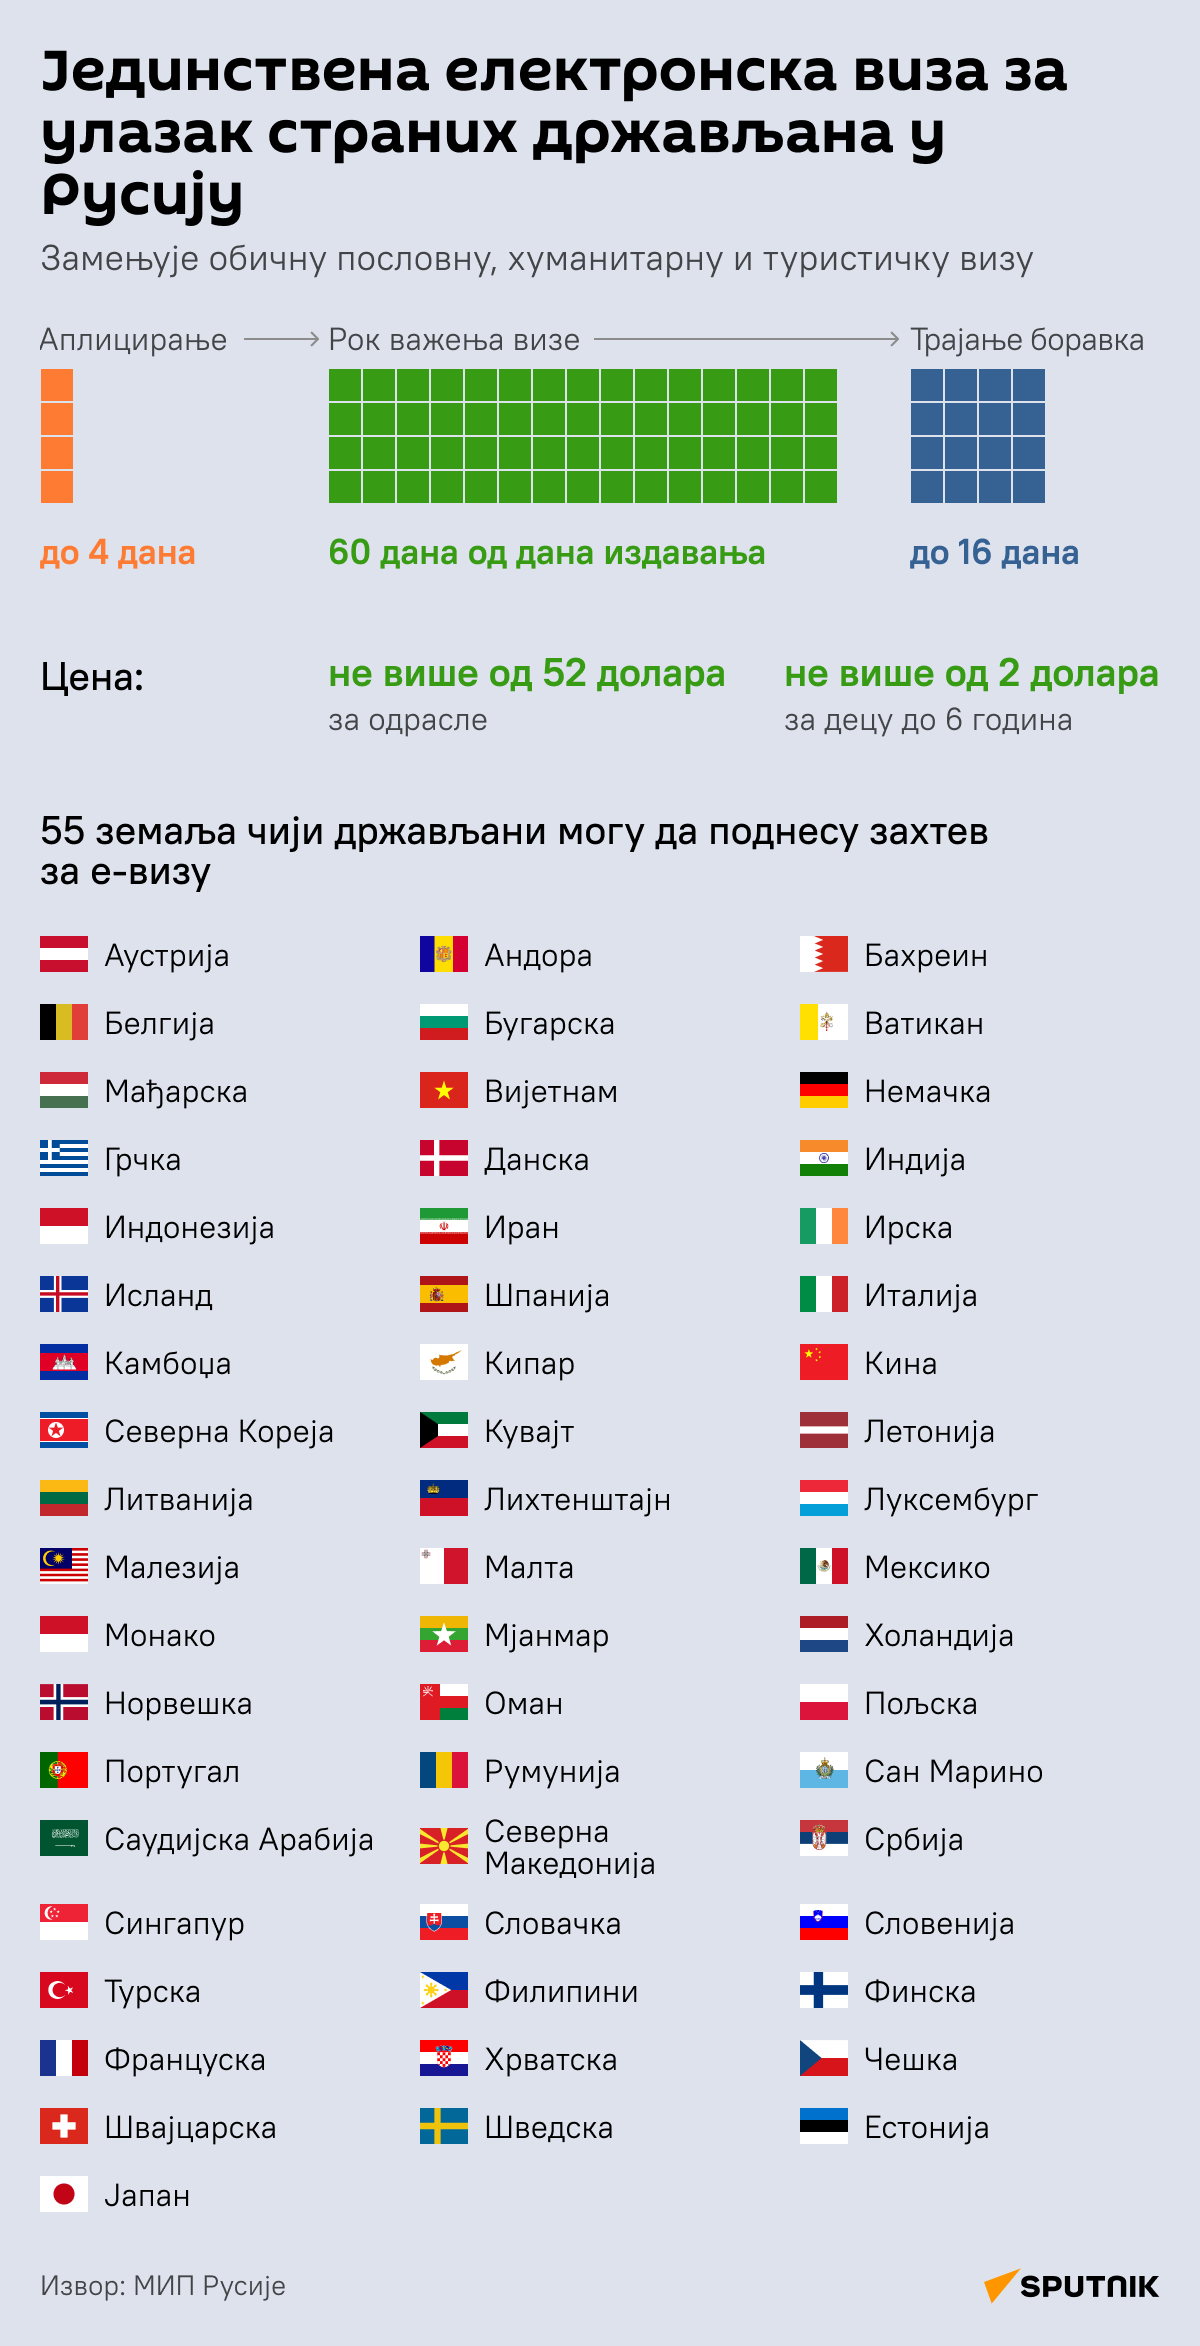 ИНФОГРАФИКА Електронска виза за улазак страних држављана у Русију ЋИРИЛИЦА деск - Sputnik Србија